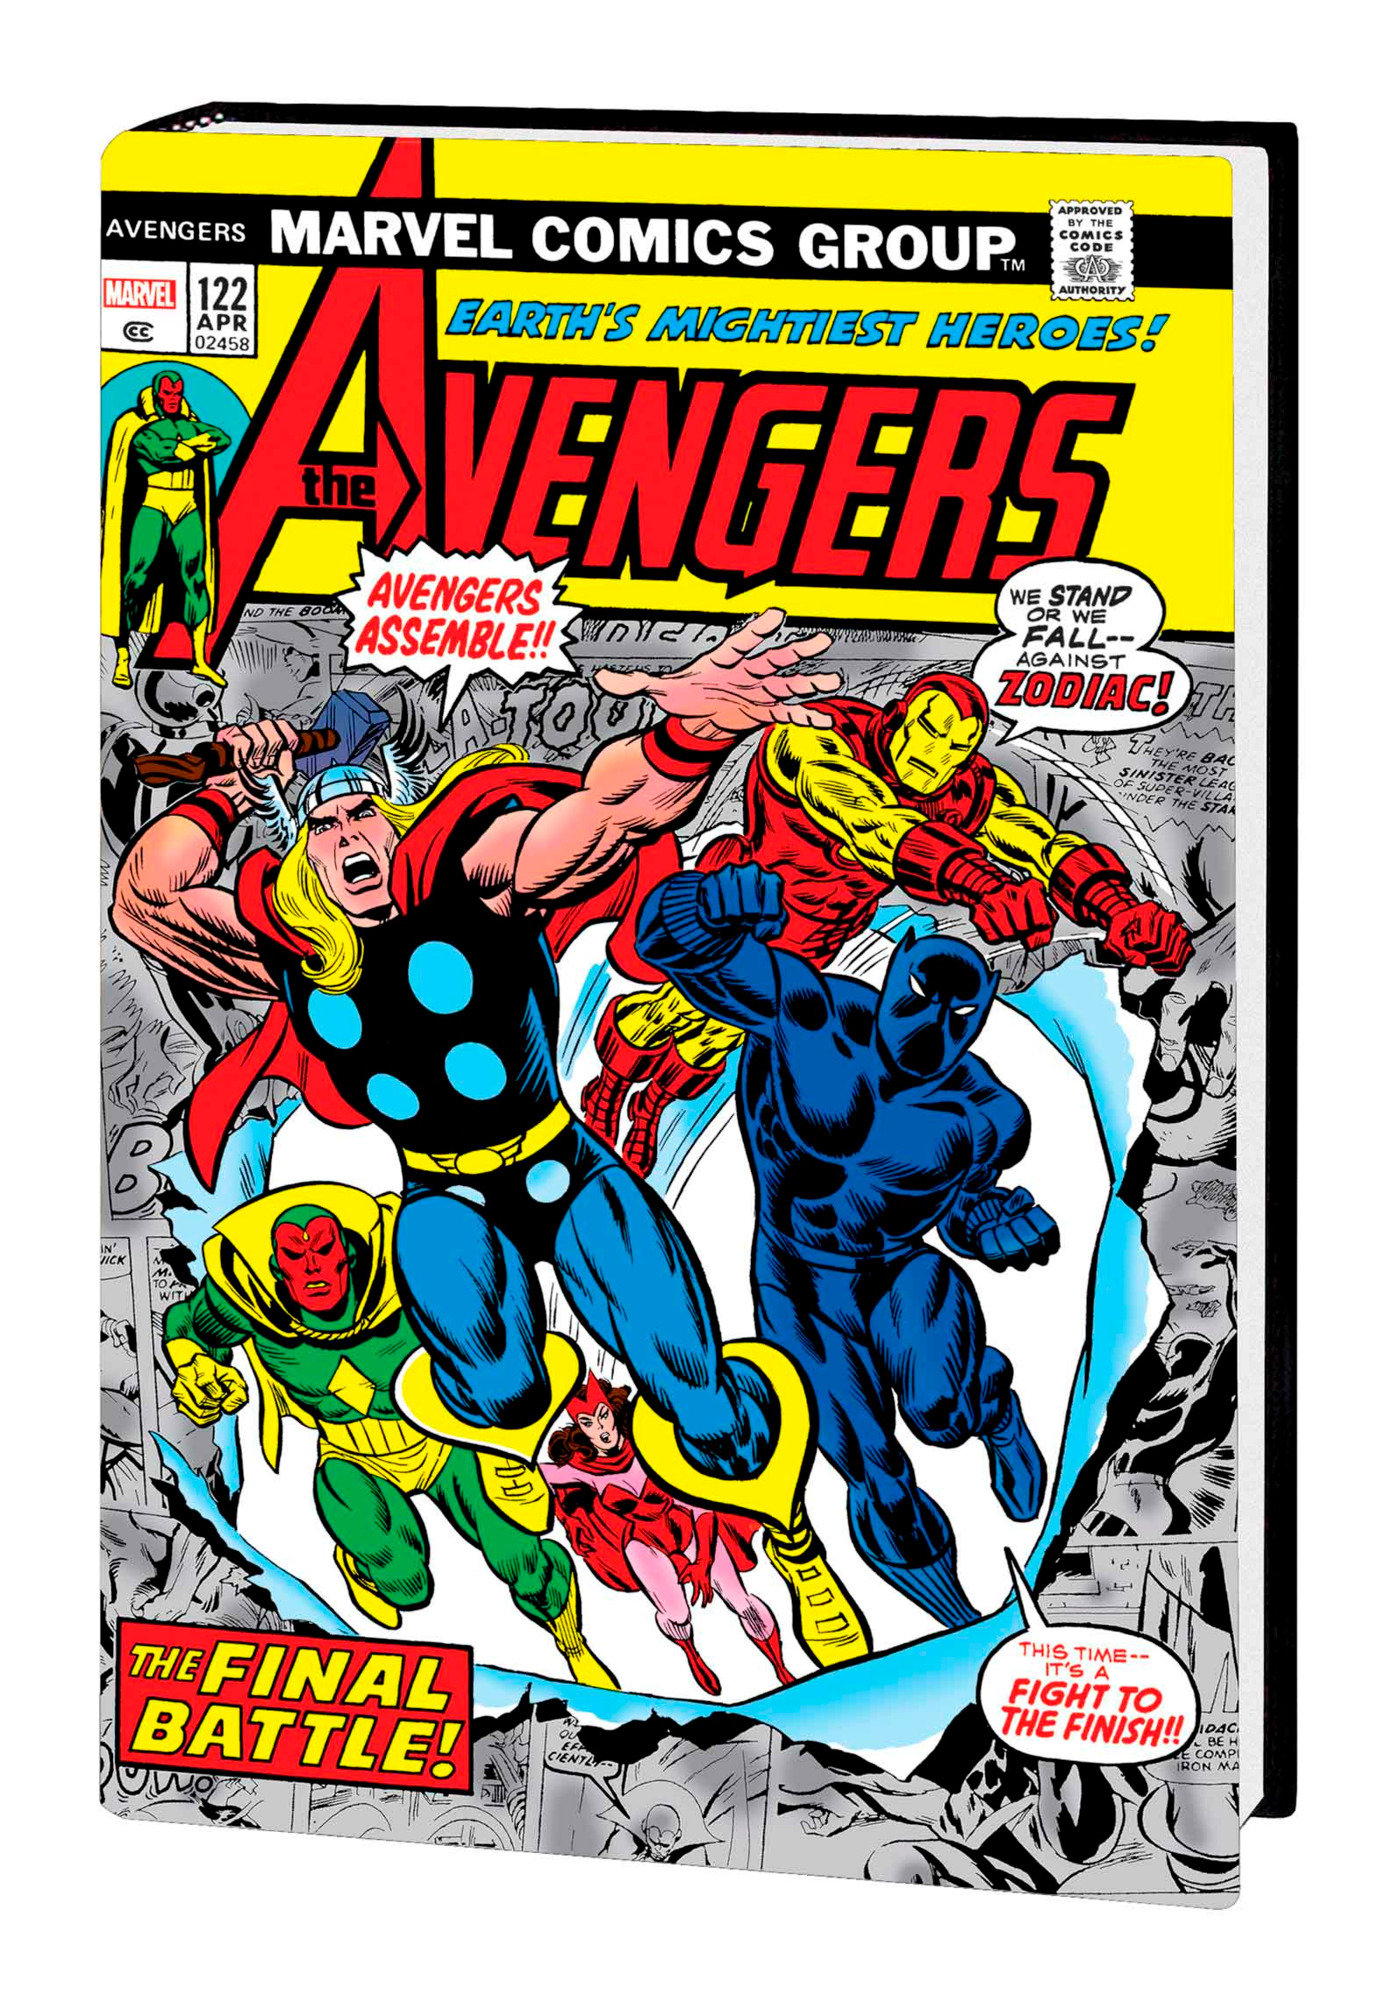 Avengers Omnibus Hardcover Volume 5 Direct Market Variant